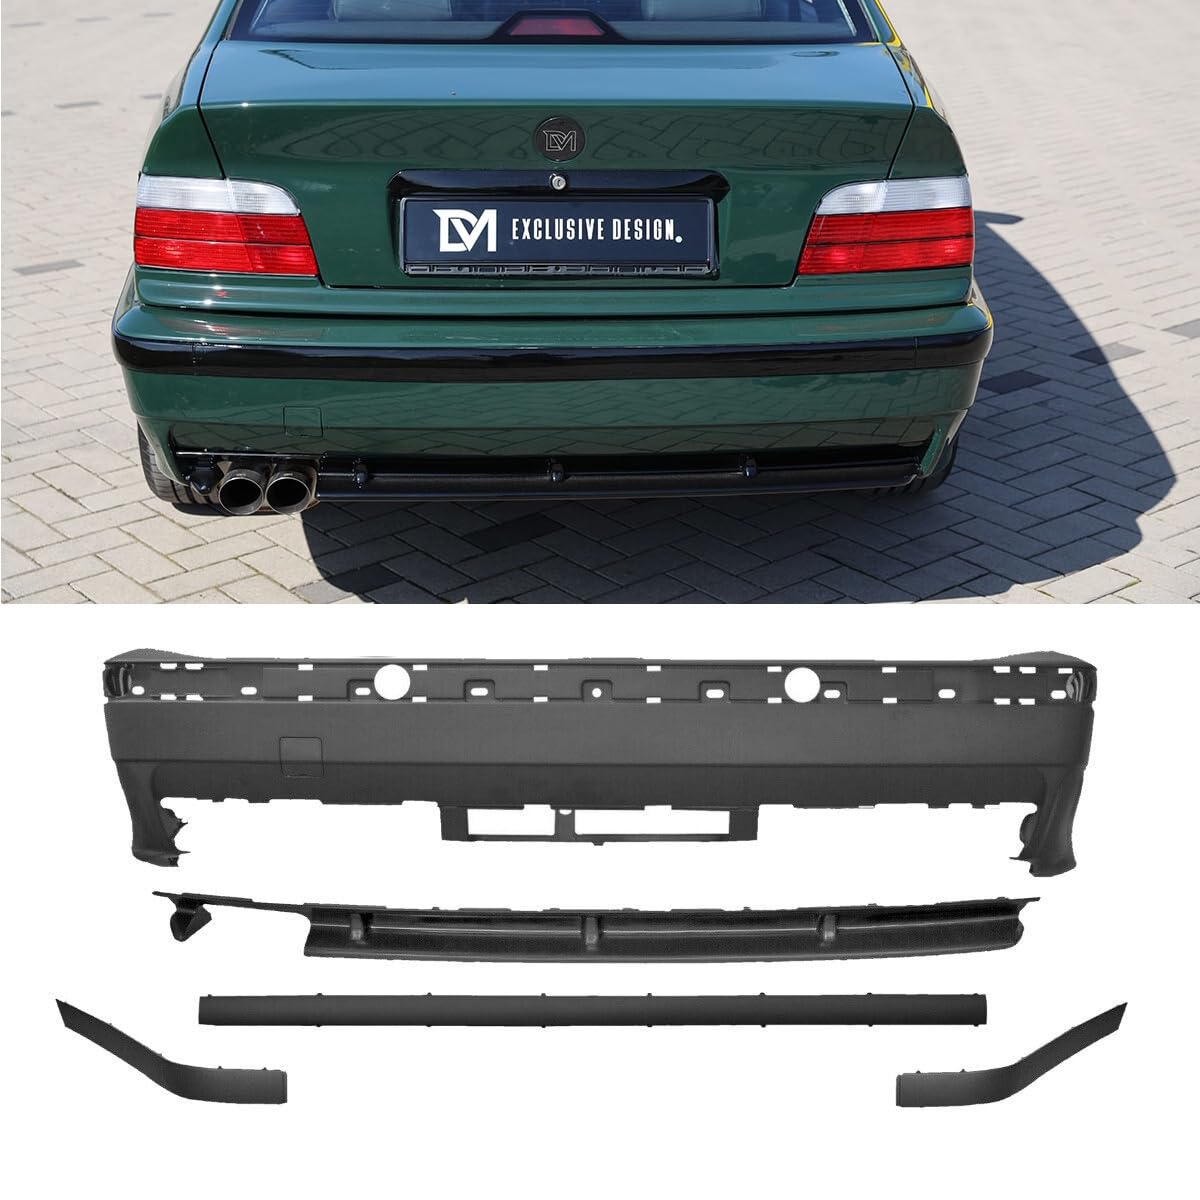 DM Autoteile 1114 Heckstoßstange Hinten Coupe Cabrio Limousine Touring kompatibel für BMW E36 auch M3 M von DM Autoteile